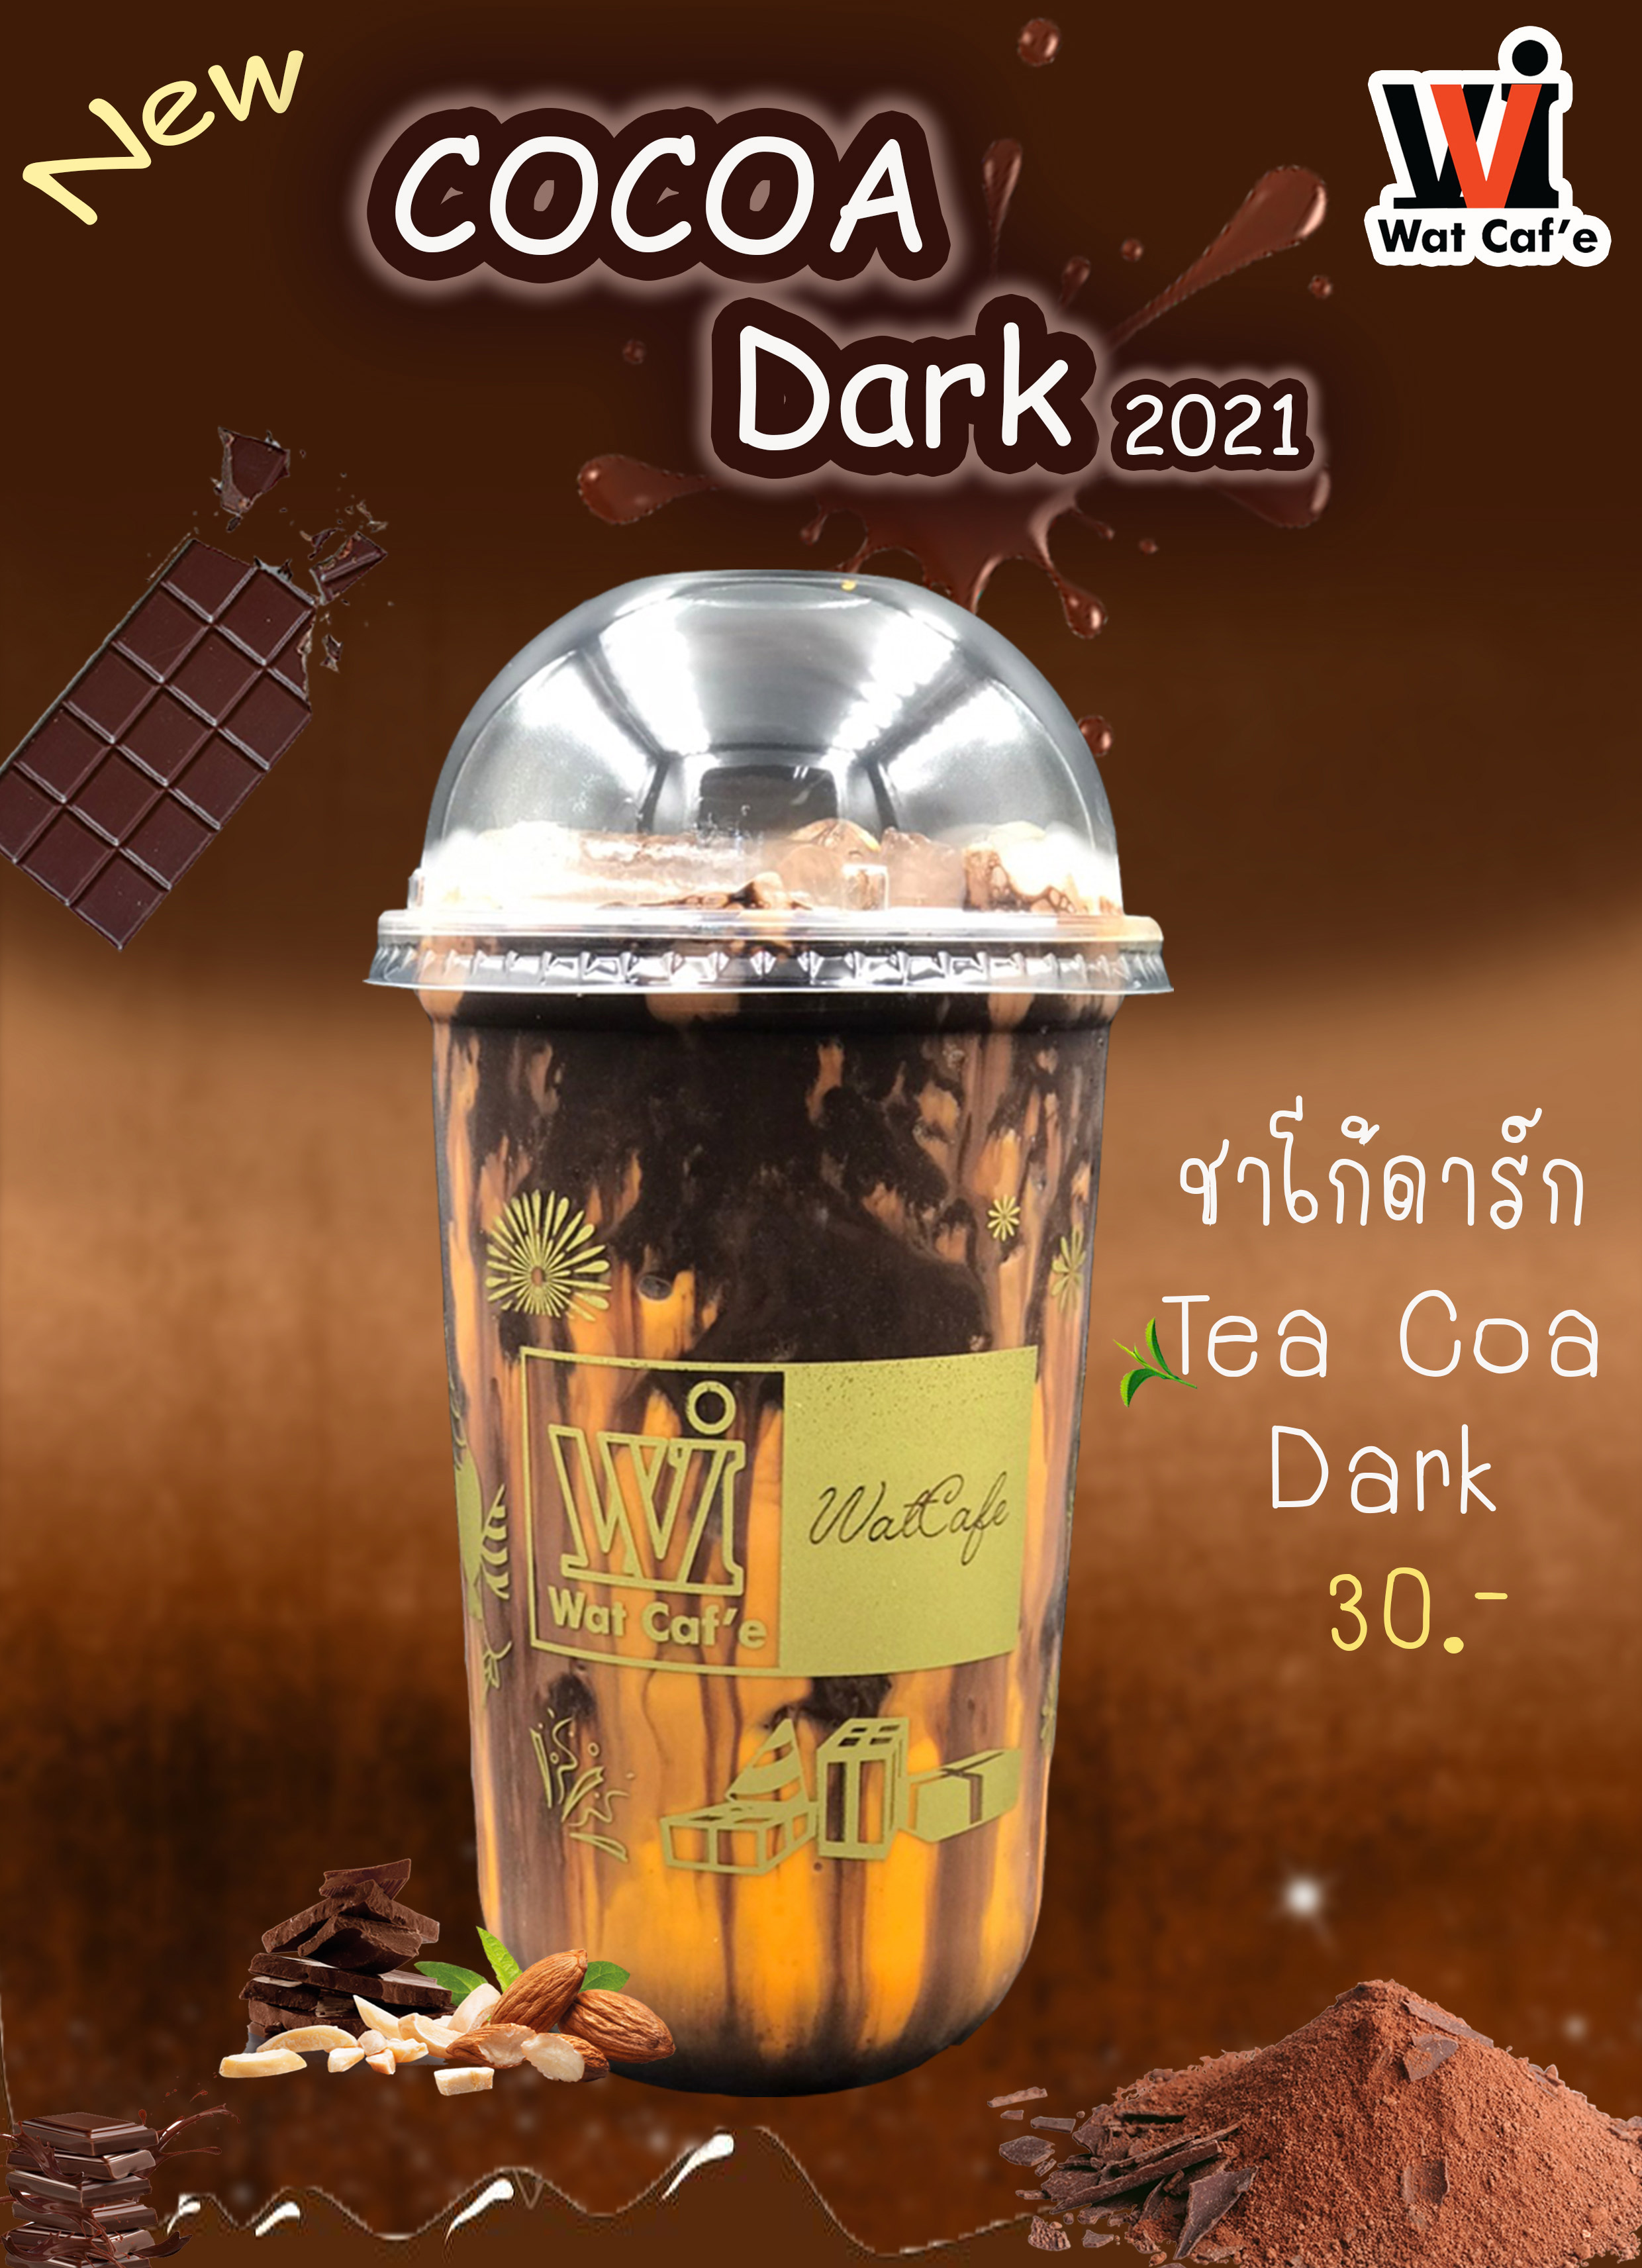 Tea Coa Dark